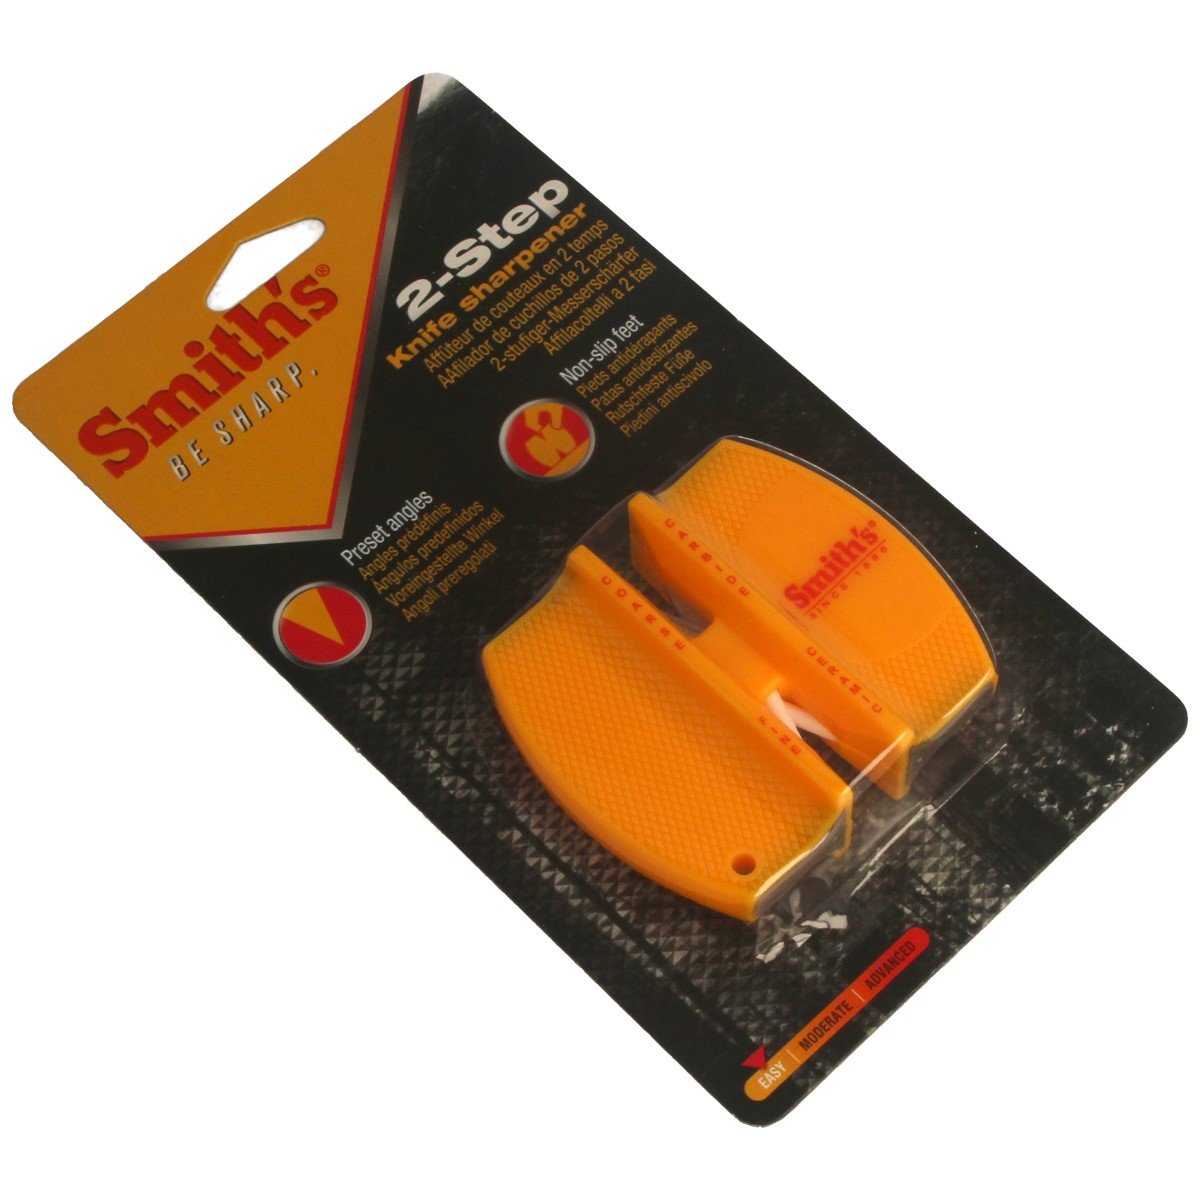 Smith's 50005 Edge Pro - Afilador de cuchillos eléctrico compacto, amarillo  y gris, afilador de 2 etapas de borde recto, afilado eléctrico y manual